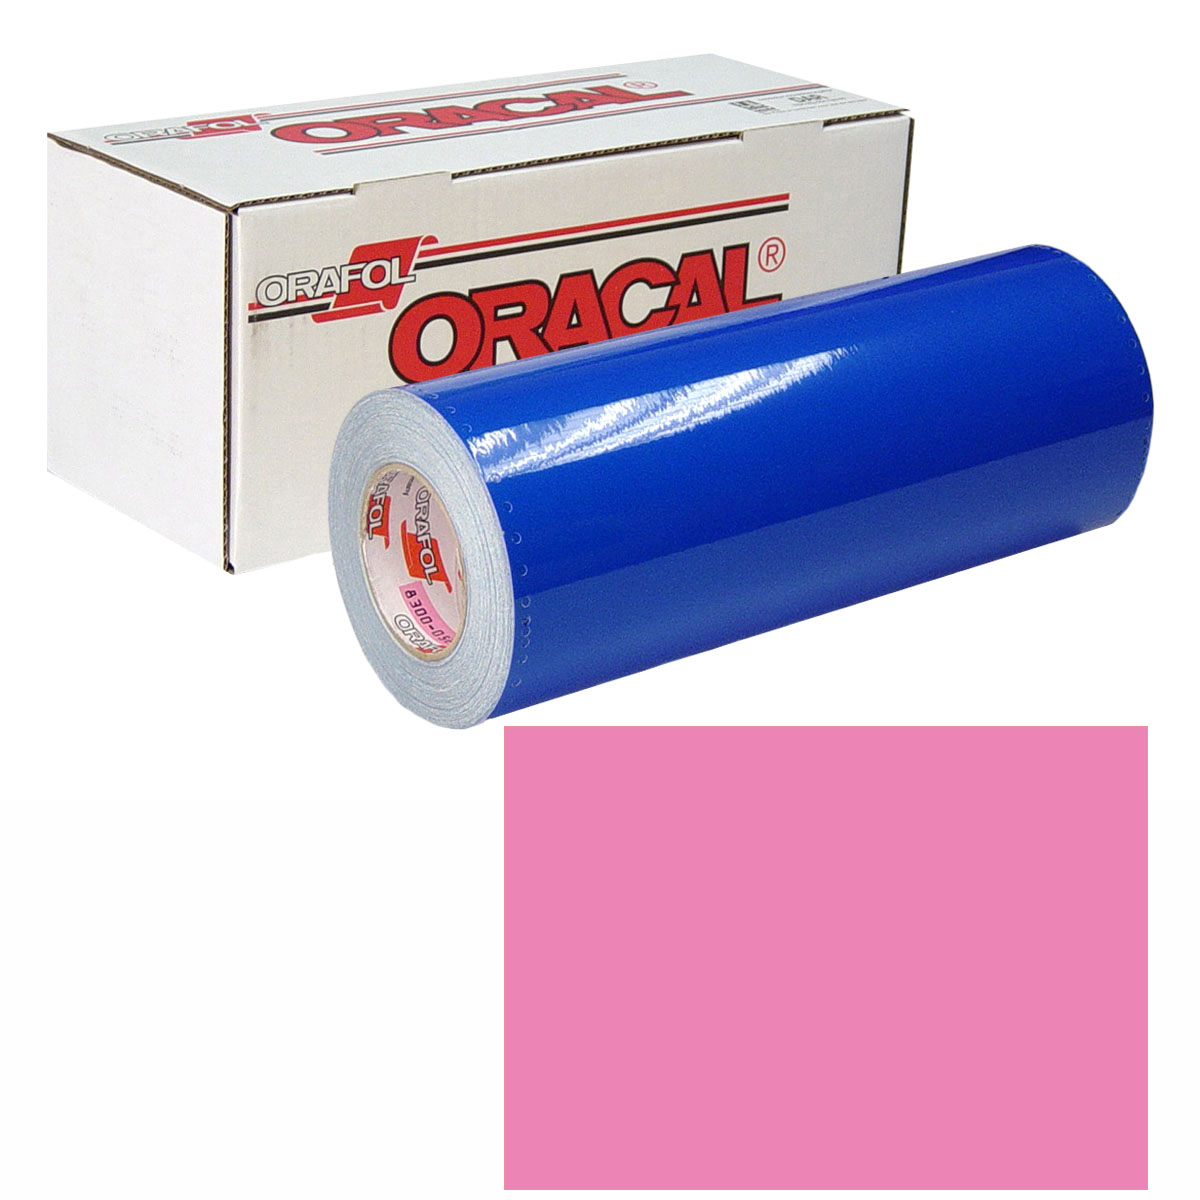 ORACAL 631 Unp 48in X 50yd 045 Soft Pink